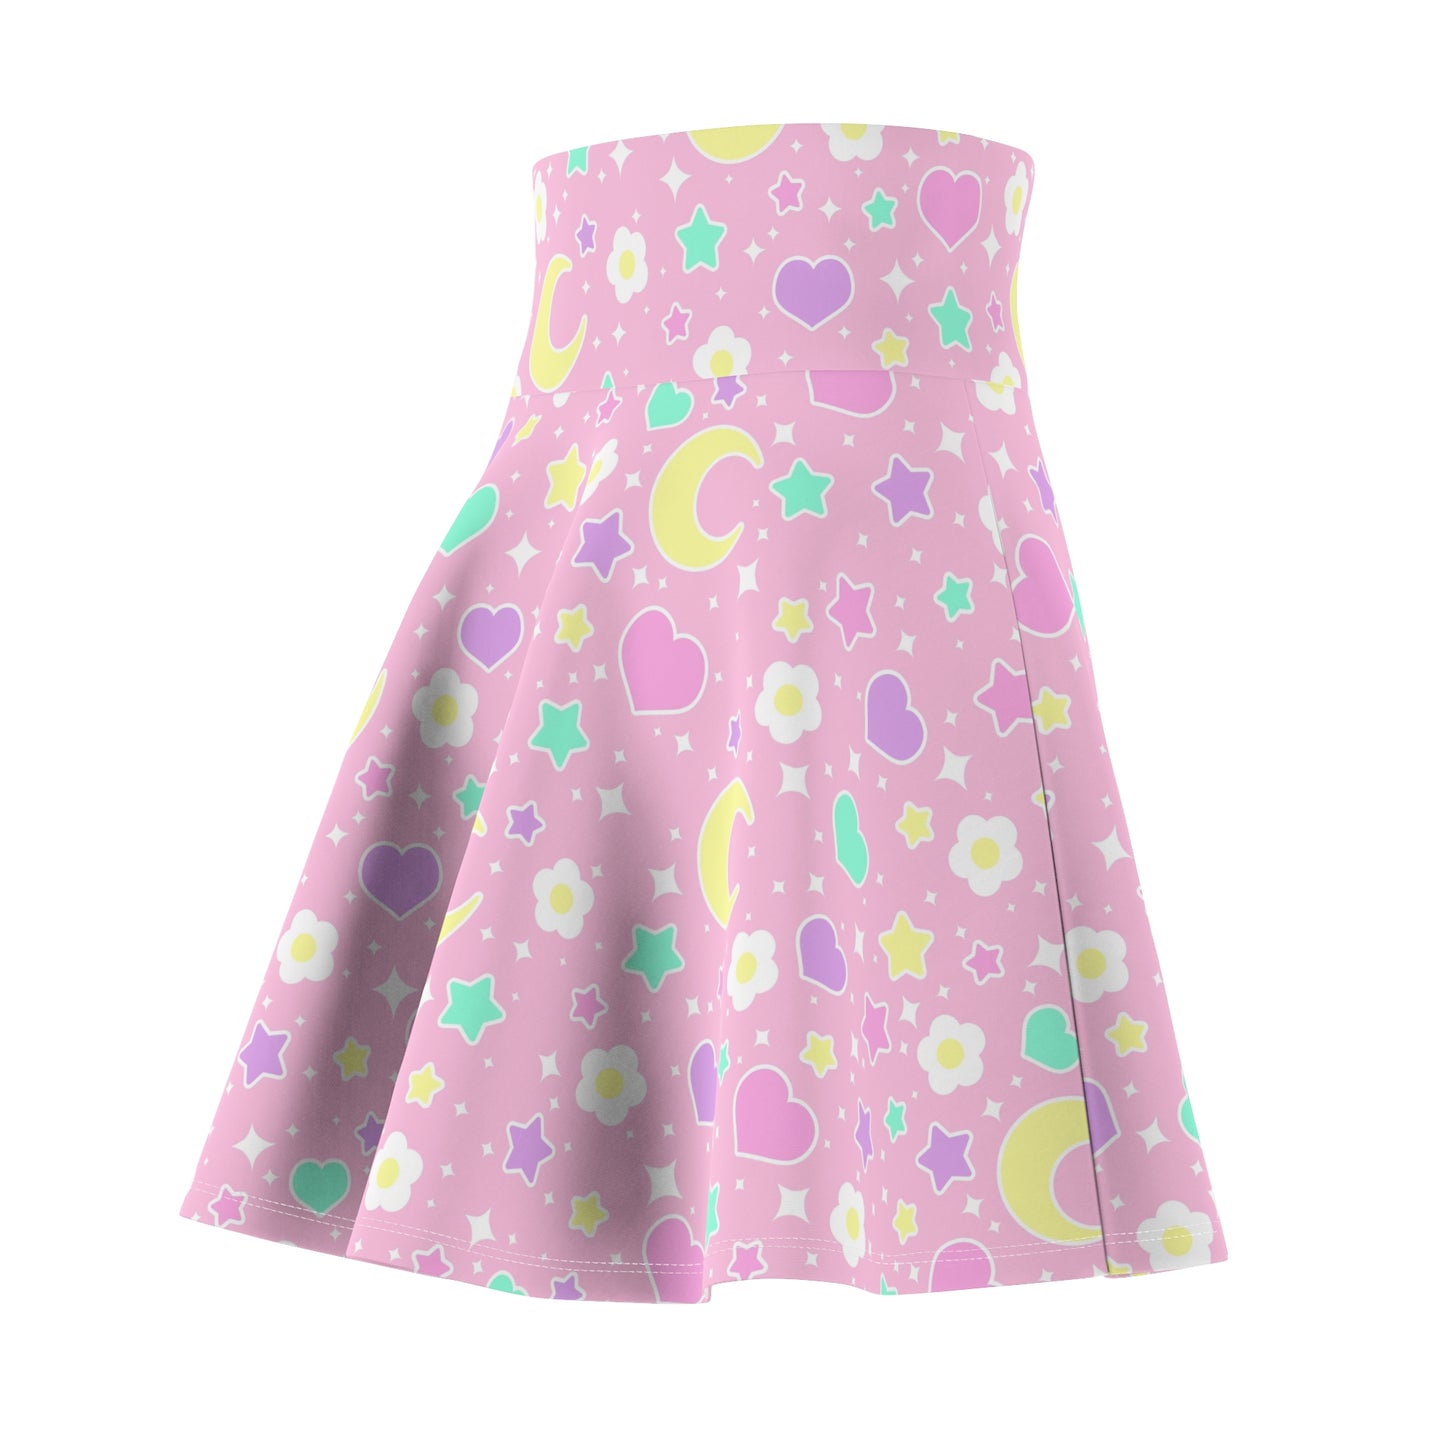 Magical Spring Pink High Waist Skater Skirt